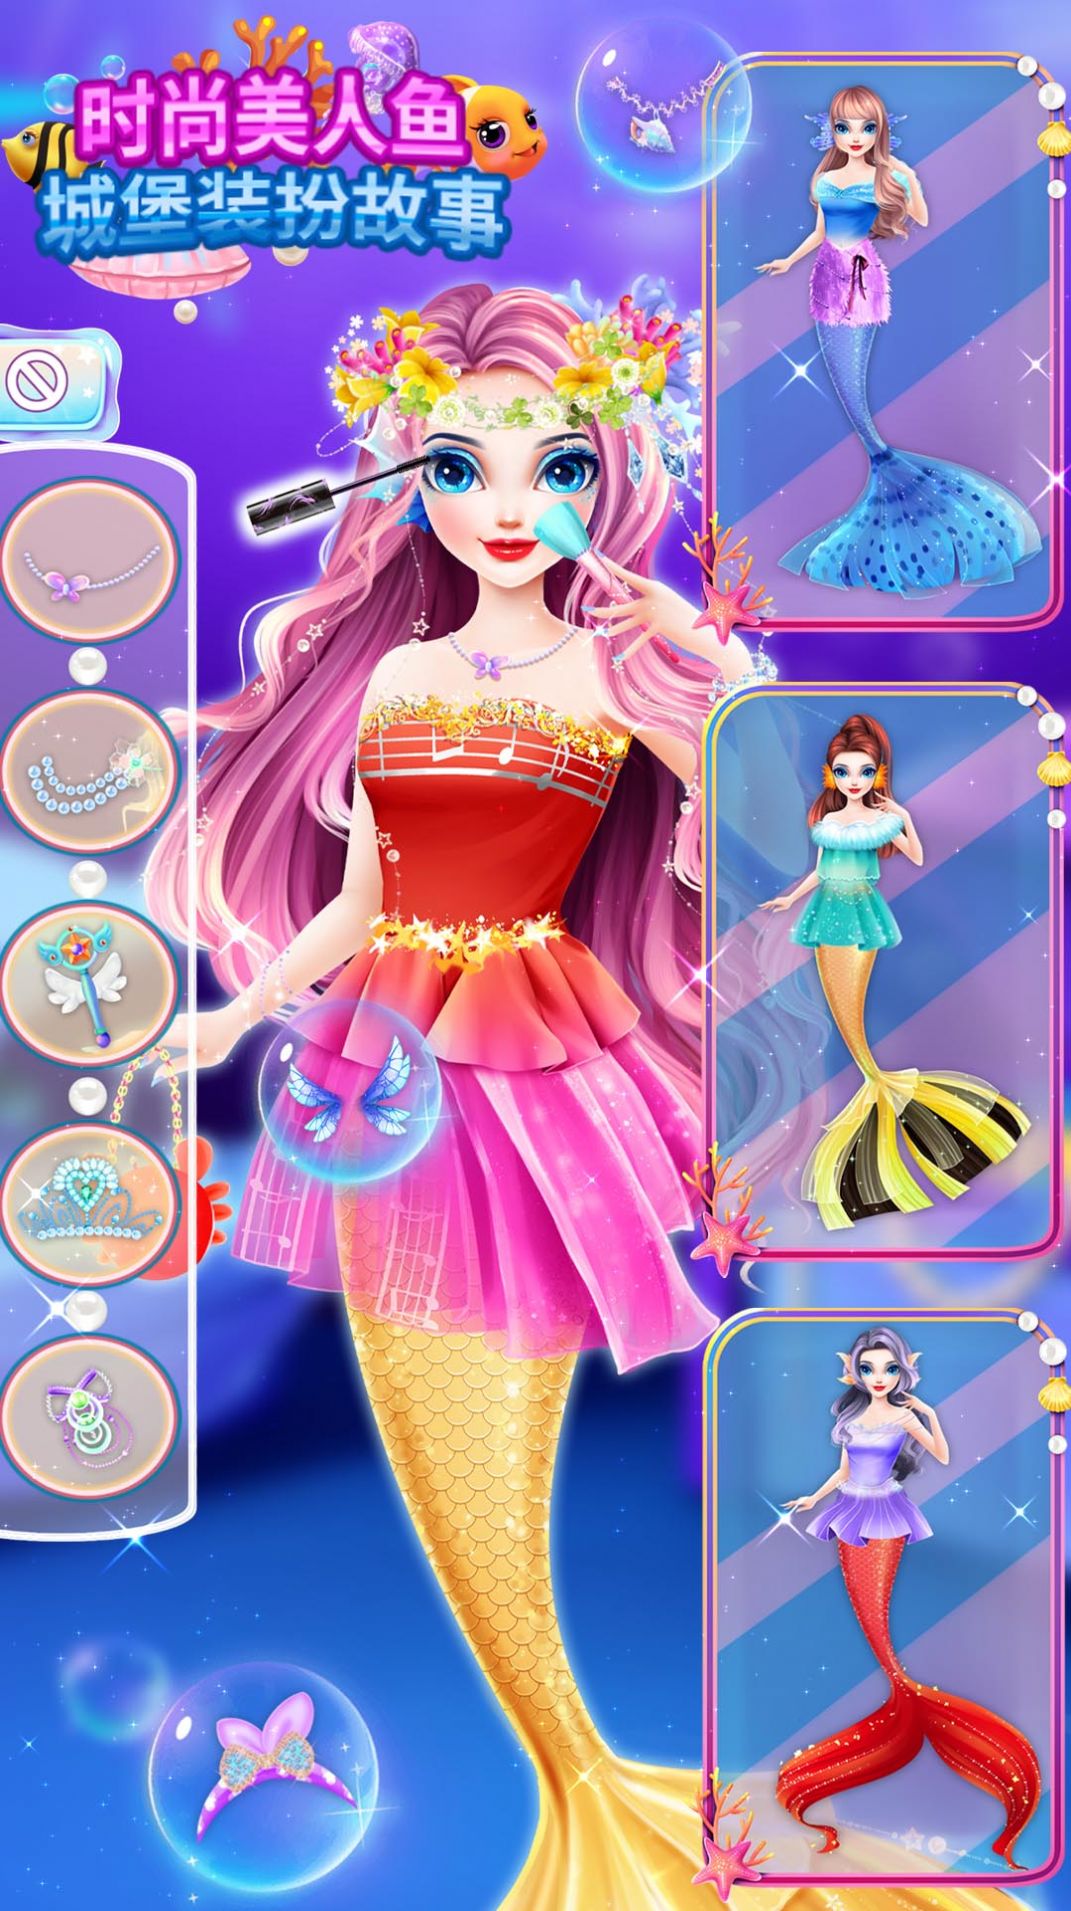 时尚美人鱼城堡装扮故事最新版下载,时尚美人鱼城堡装扮故事游戏最新版 v8.0.1